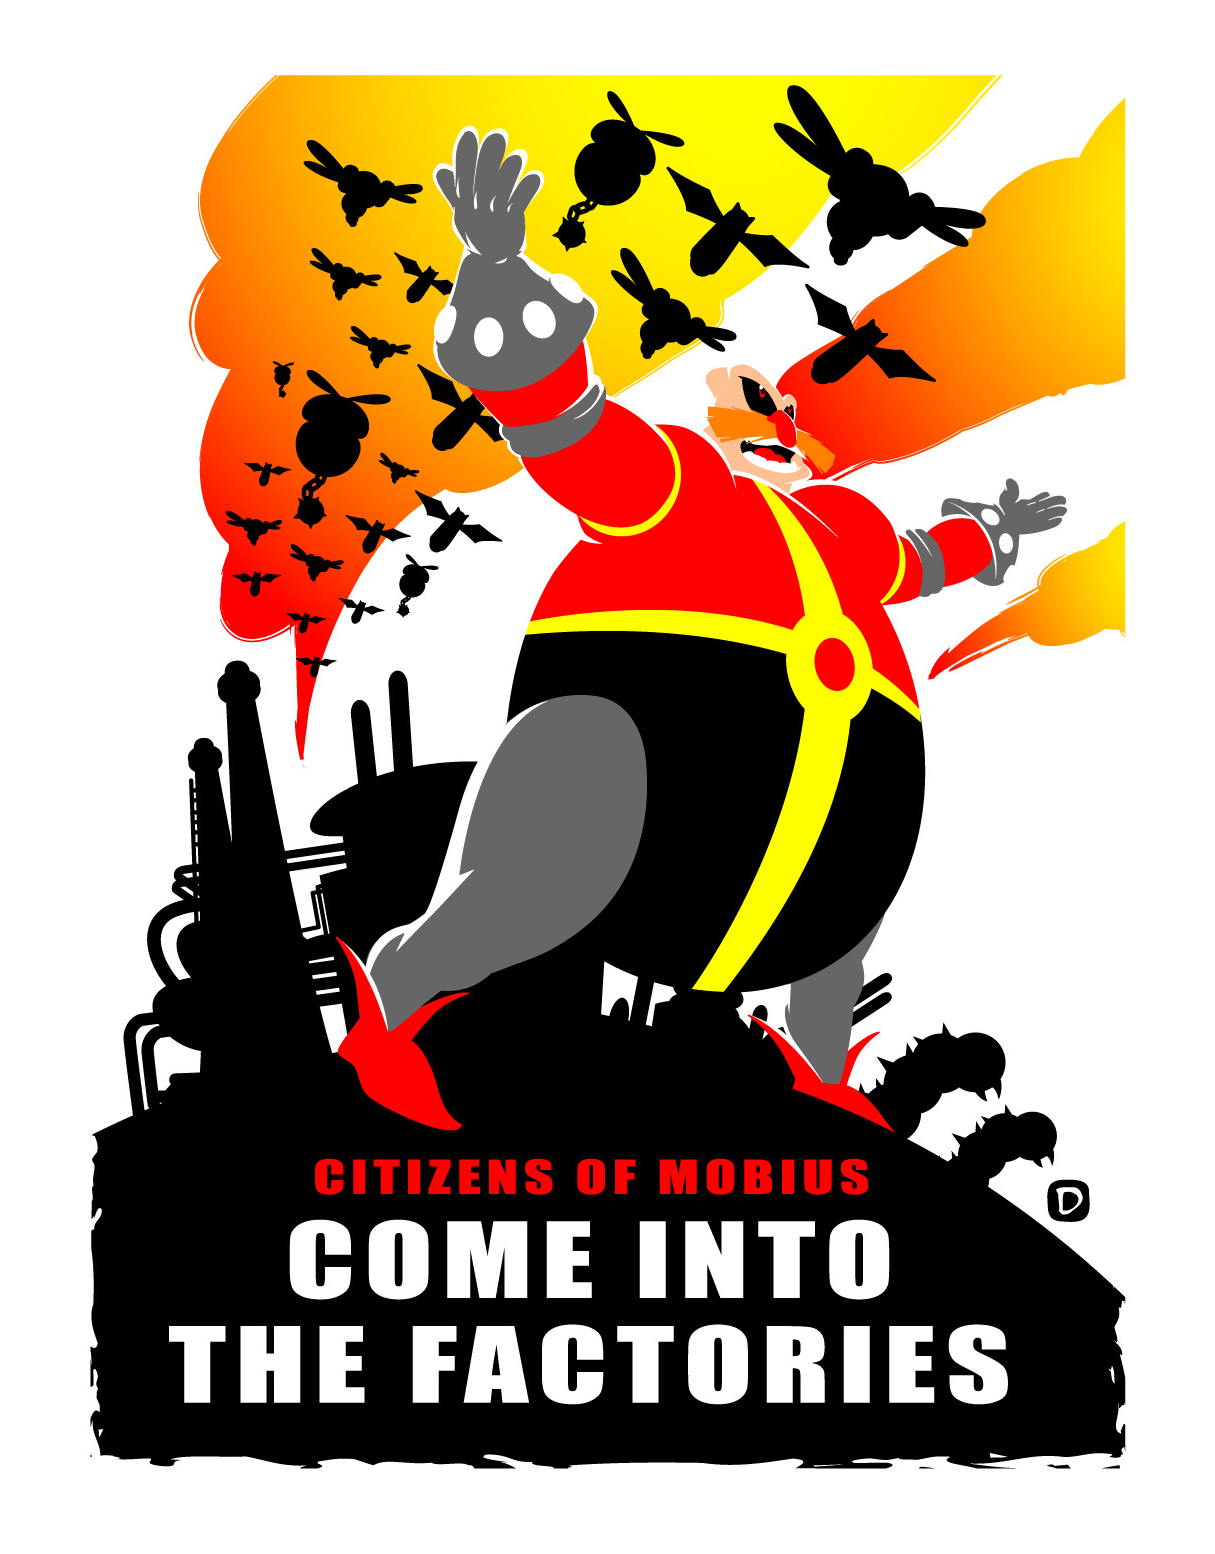 Citizens of Mobius